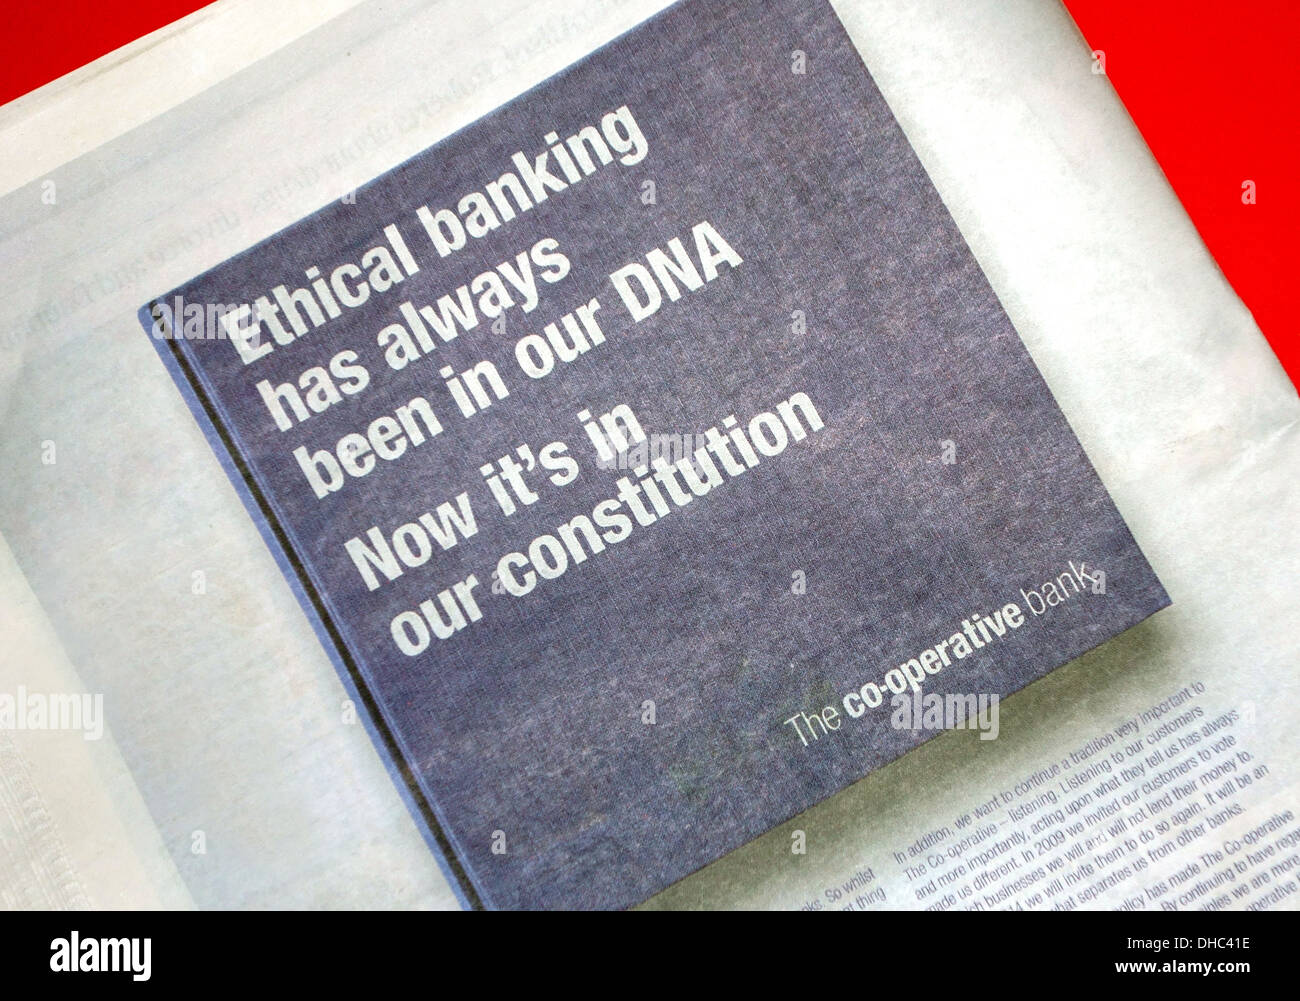 Co-operativa quotidiano Banca annuncio su banche etiche, Londra Foto Stock